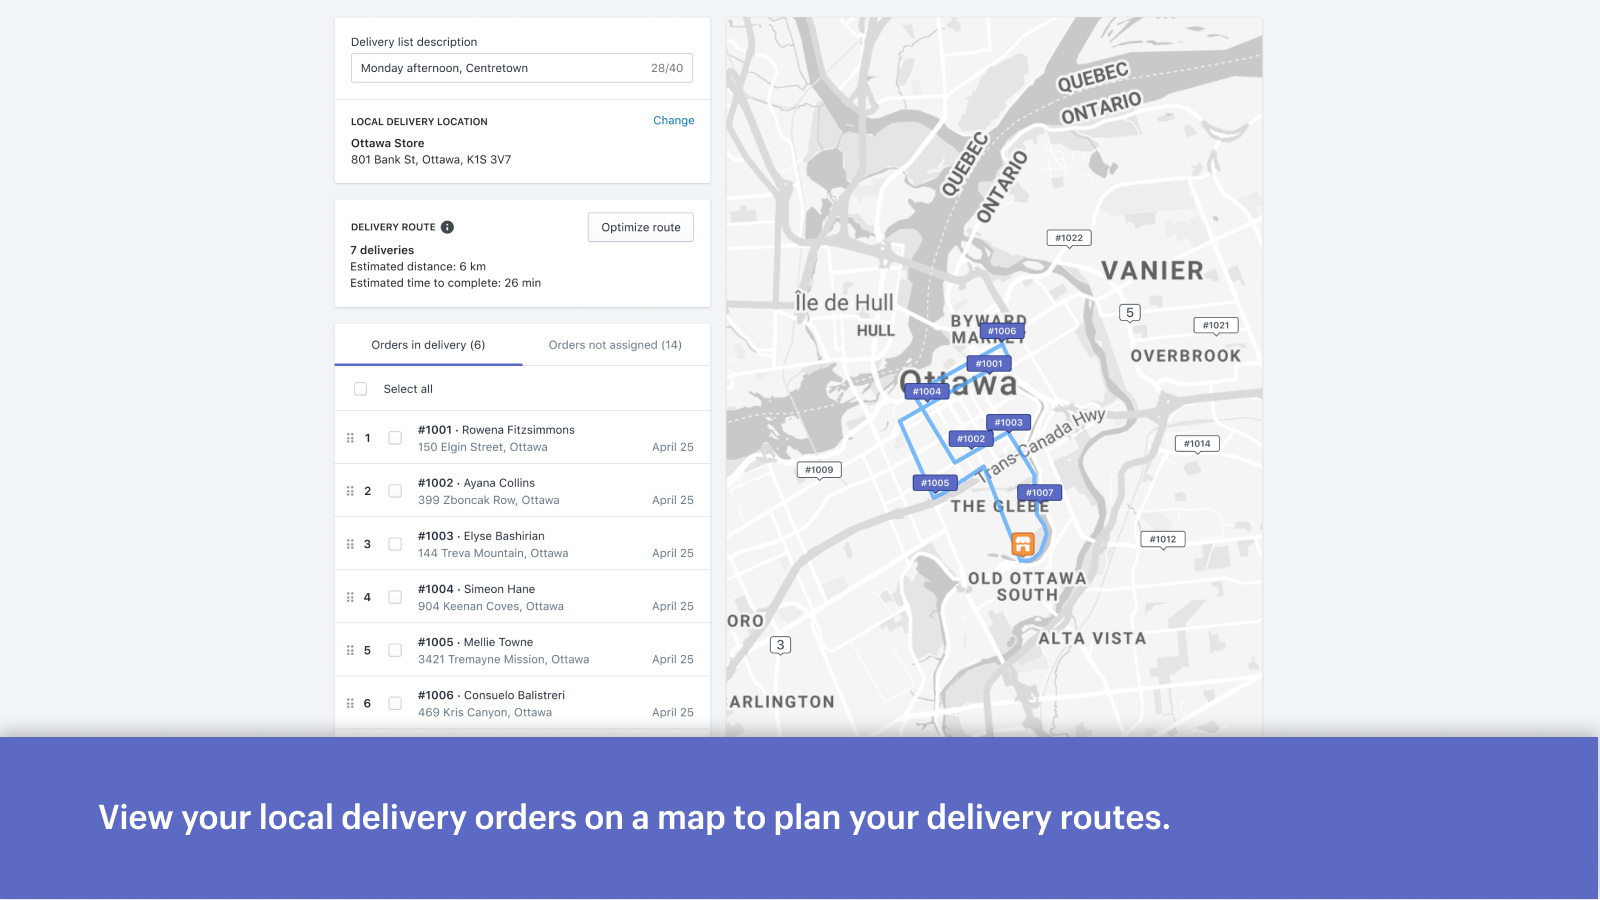 Visualize seus pedidos de entrega local em um mapa para planejar suas entregas